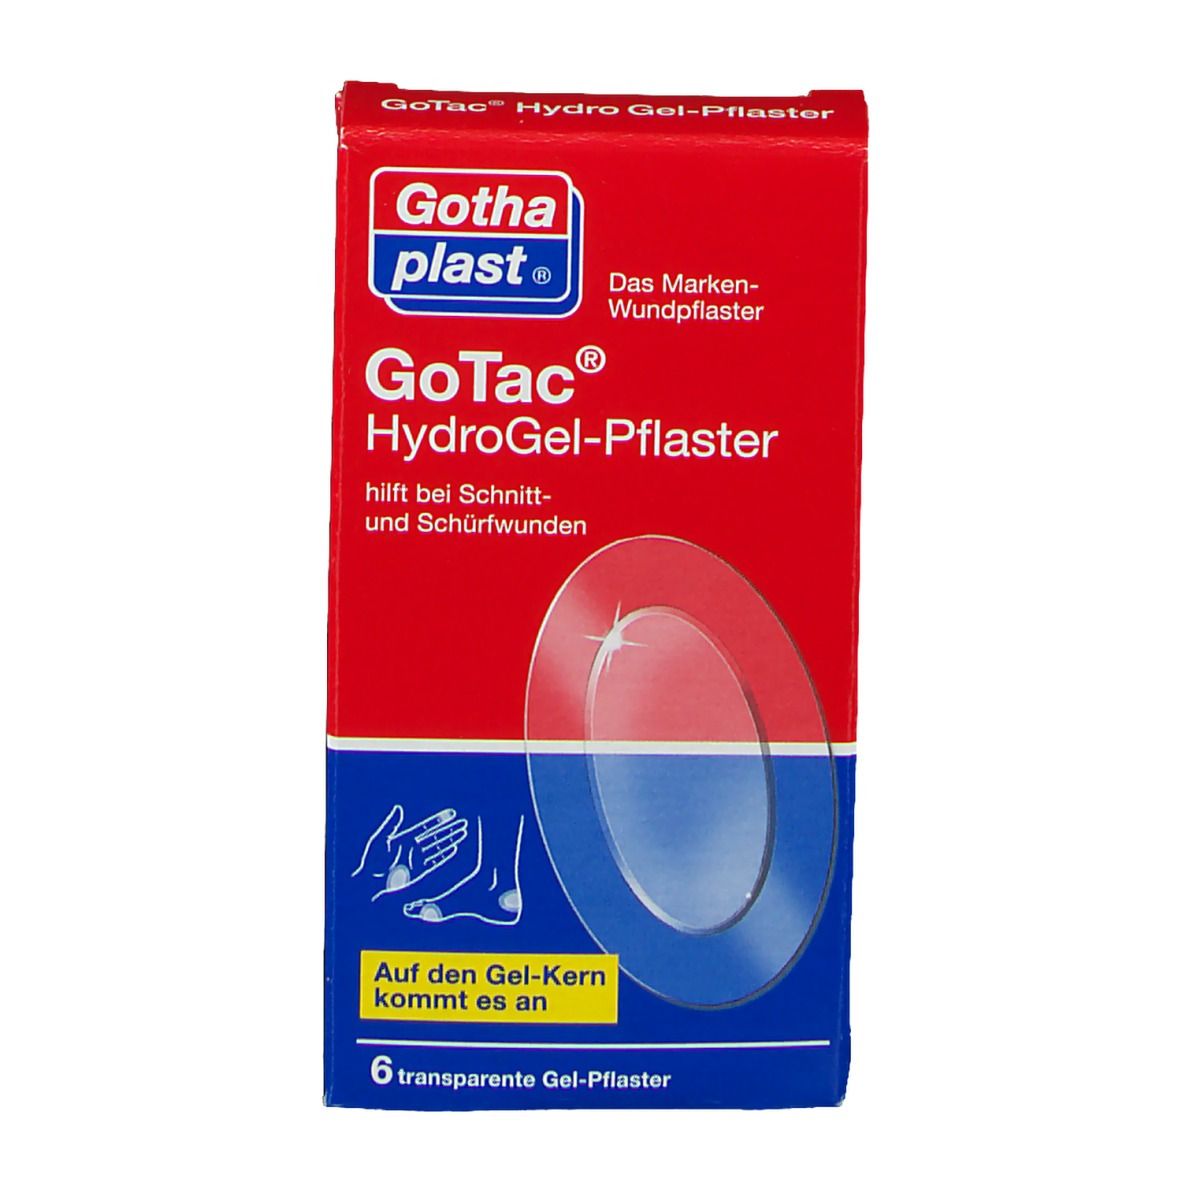 GoTac Hydro Gel-Pflaster oval 7,4 cm x 4,5 cm